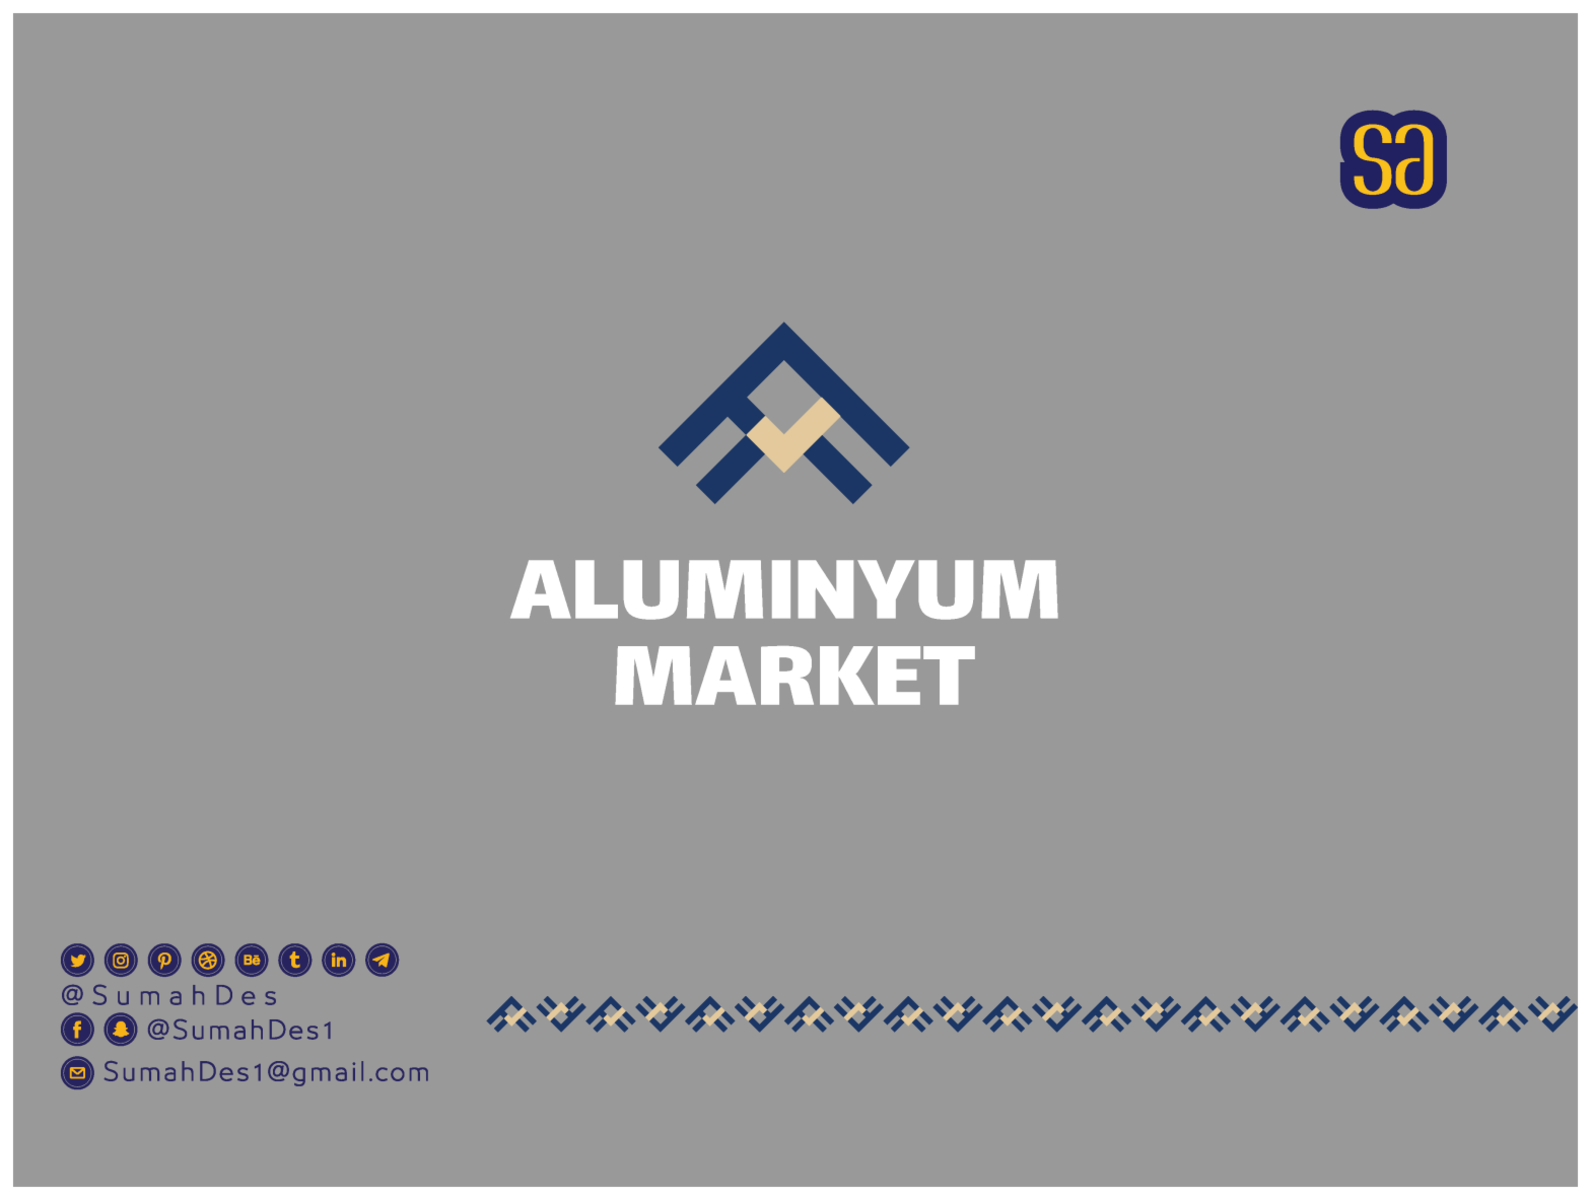 aluminium company logo